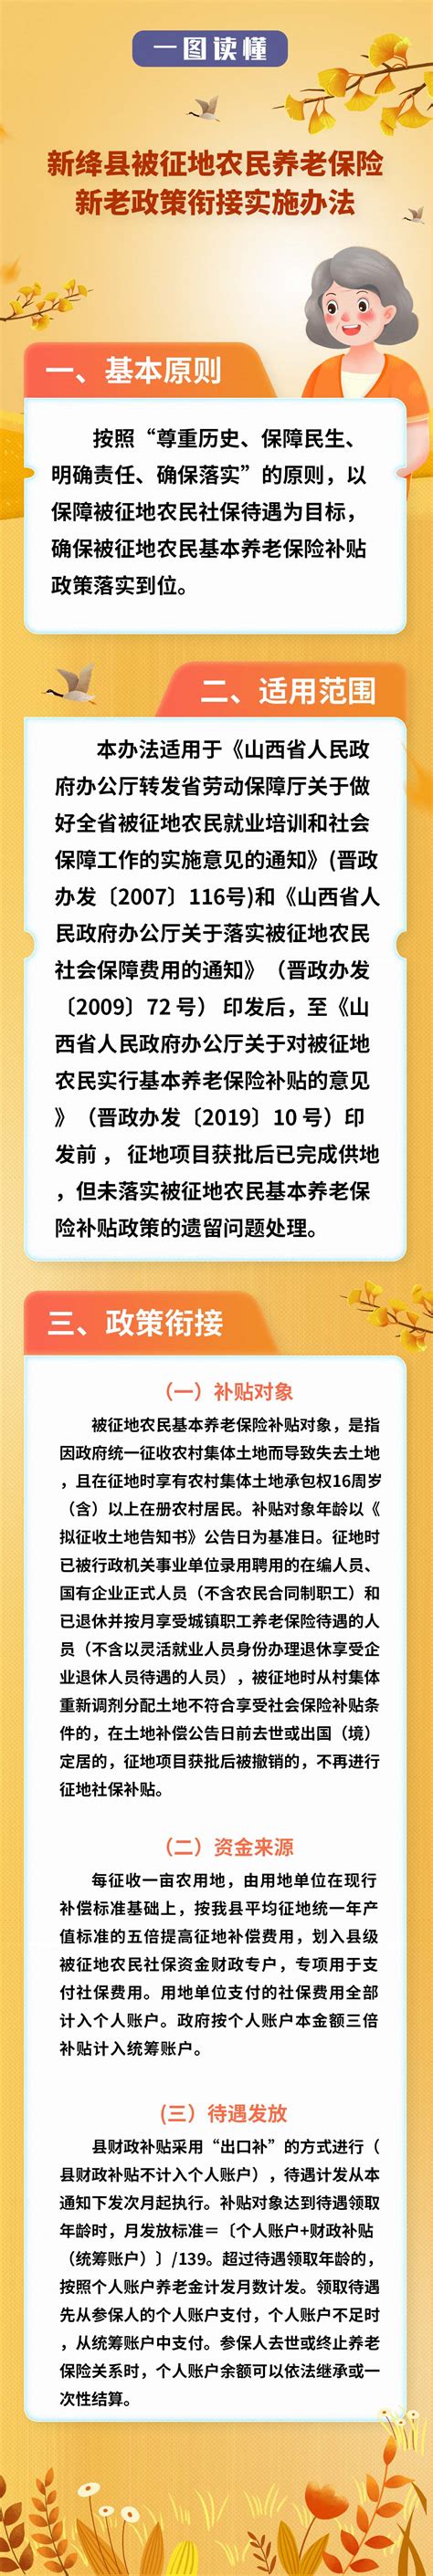 行政区划-新绛县人民政府门户网站